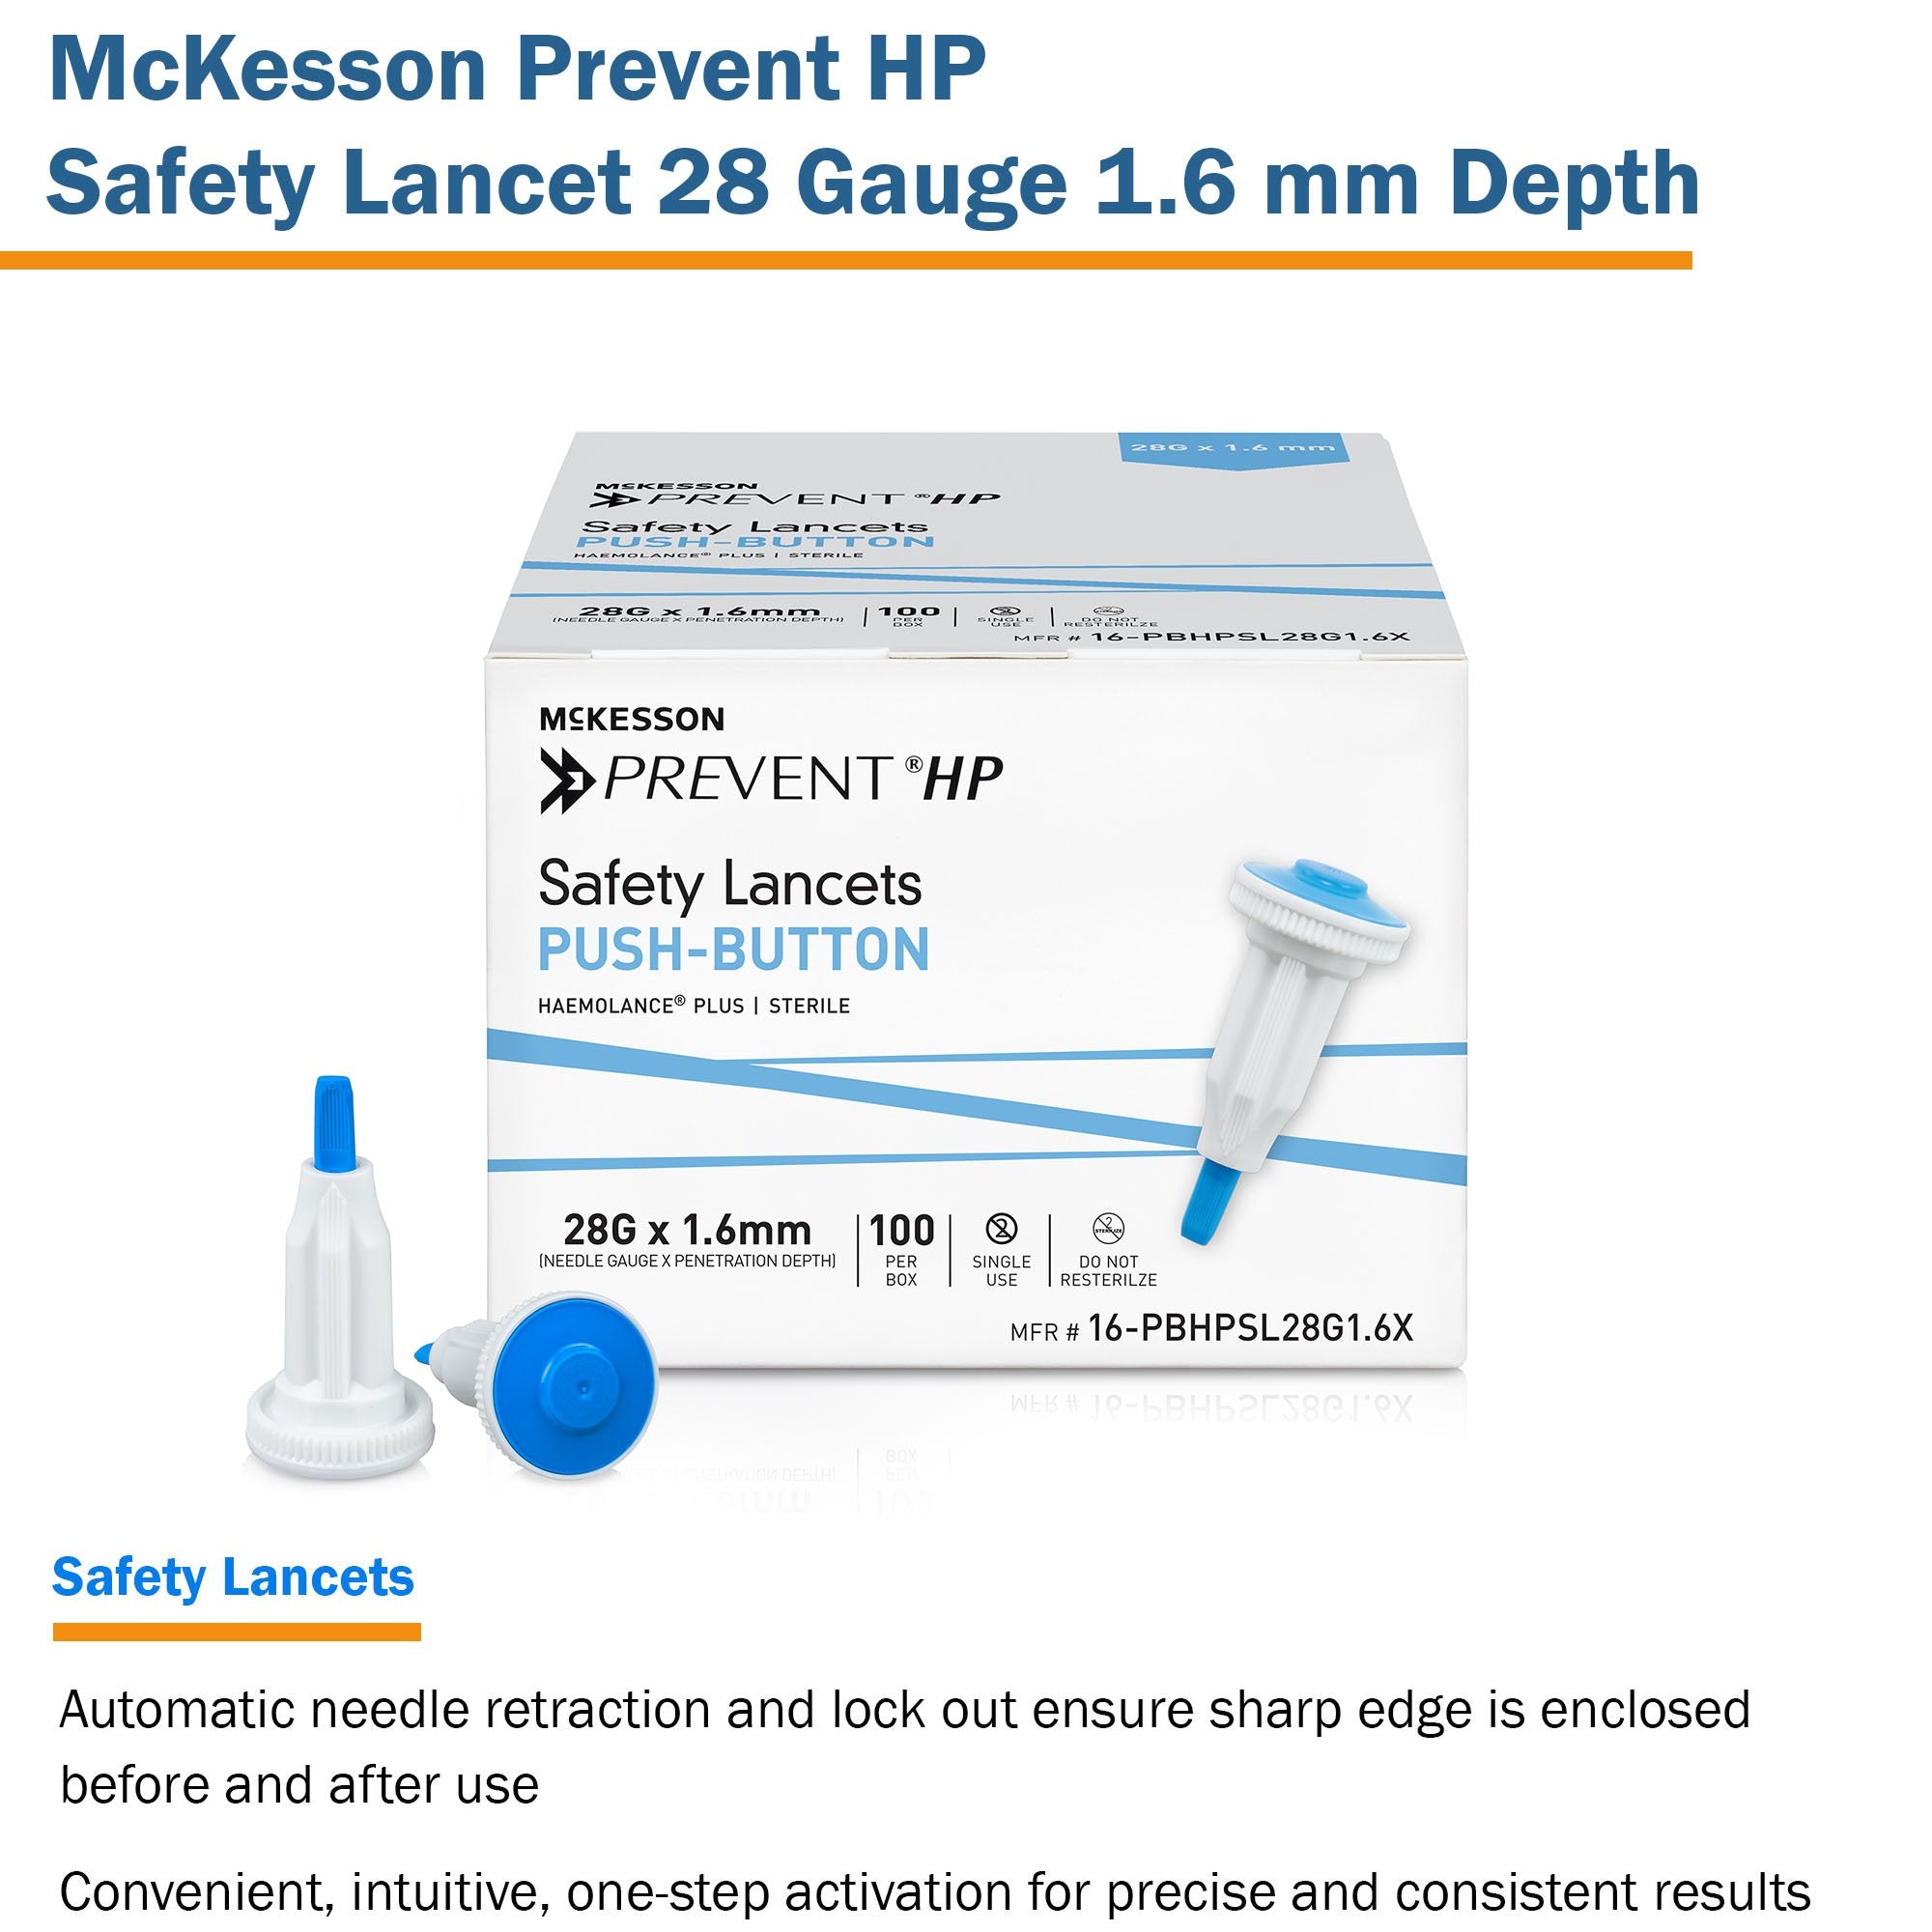 Safety Lancet McKesson Prevent HP 28 Gauge Retractable Push Button Activation Finger